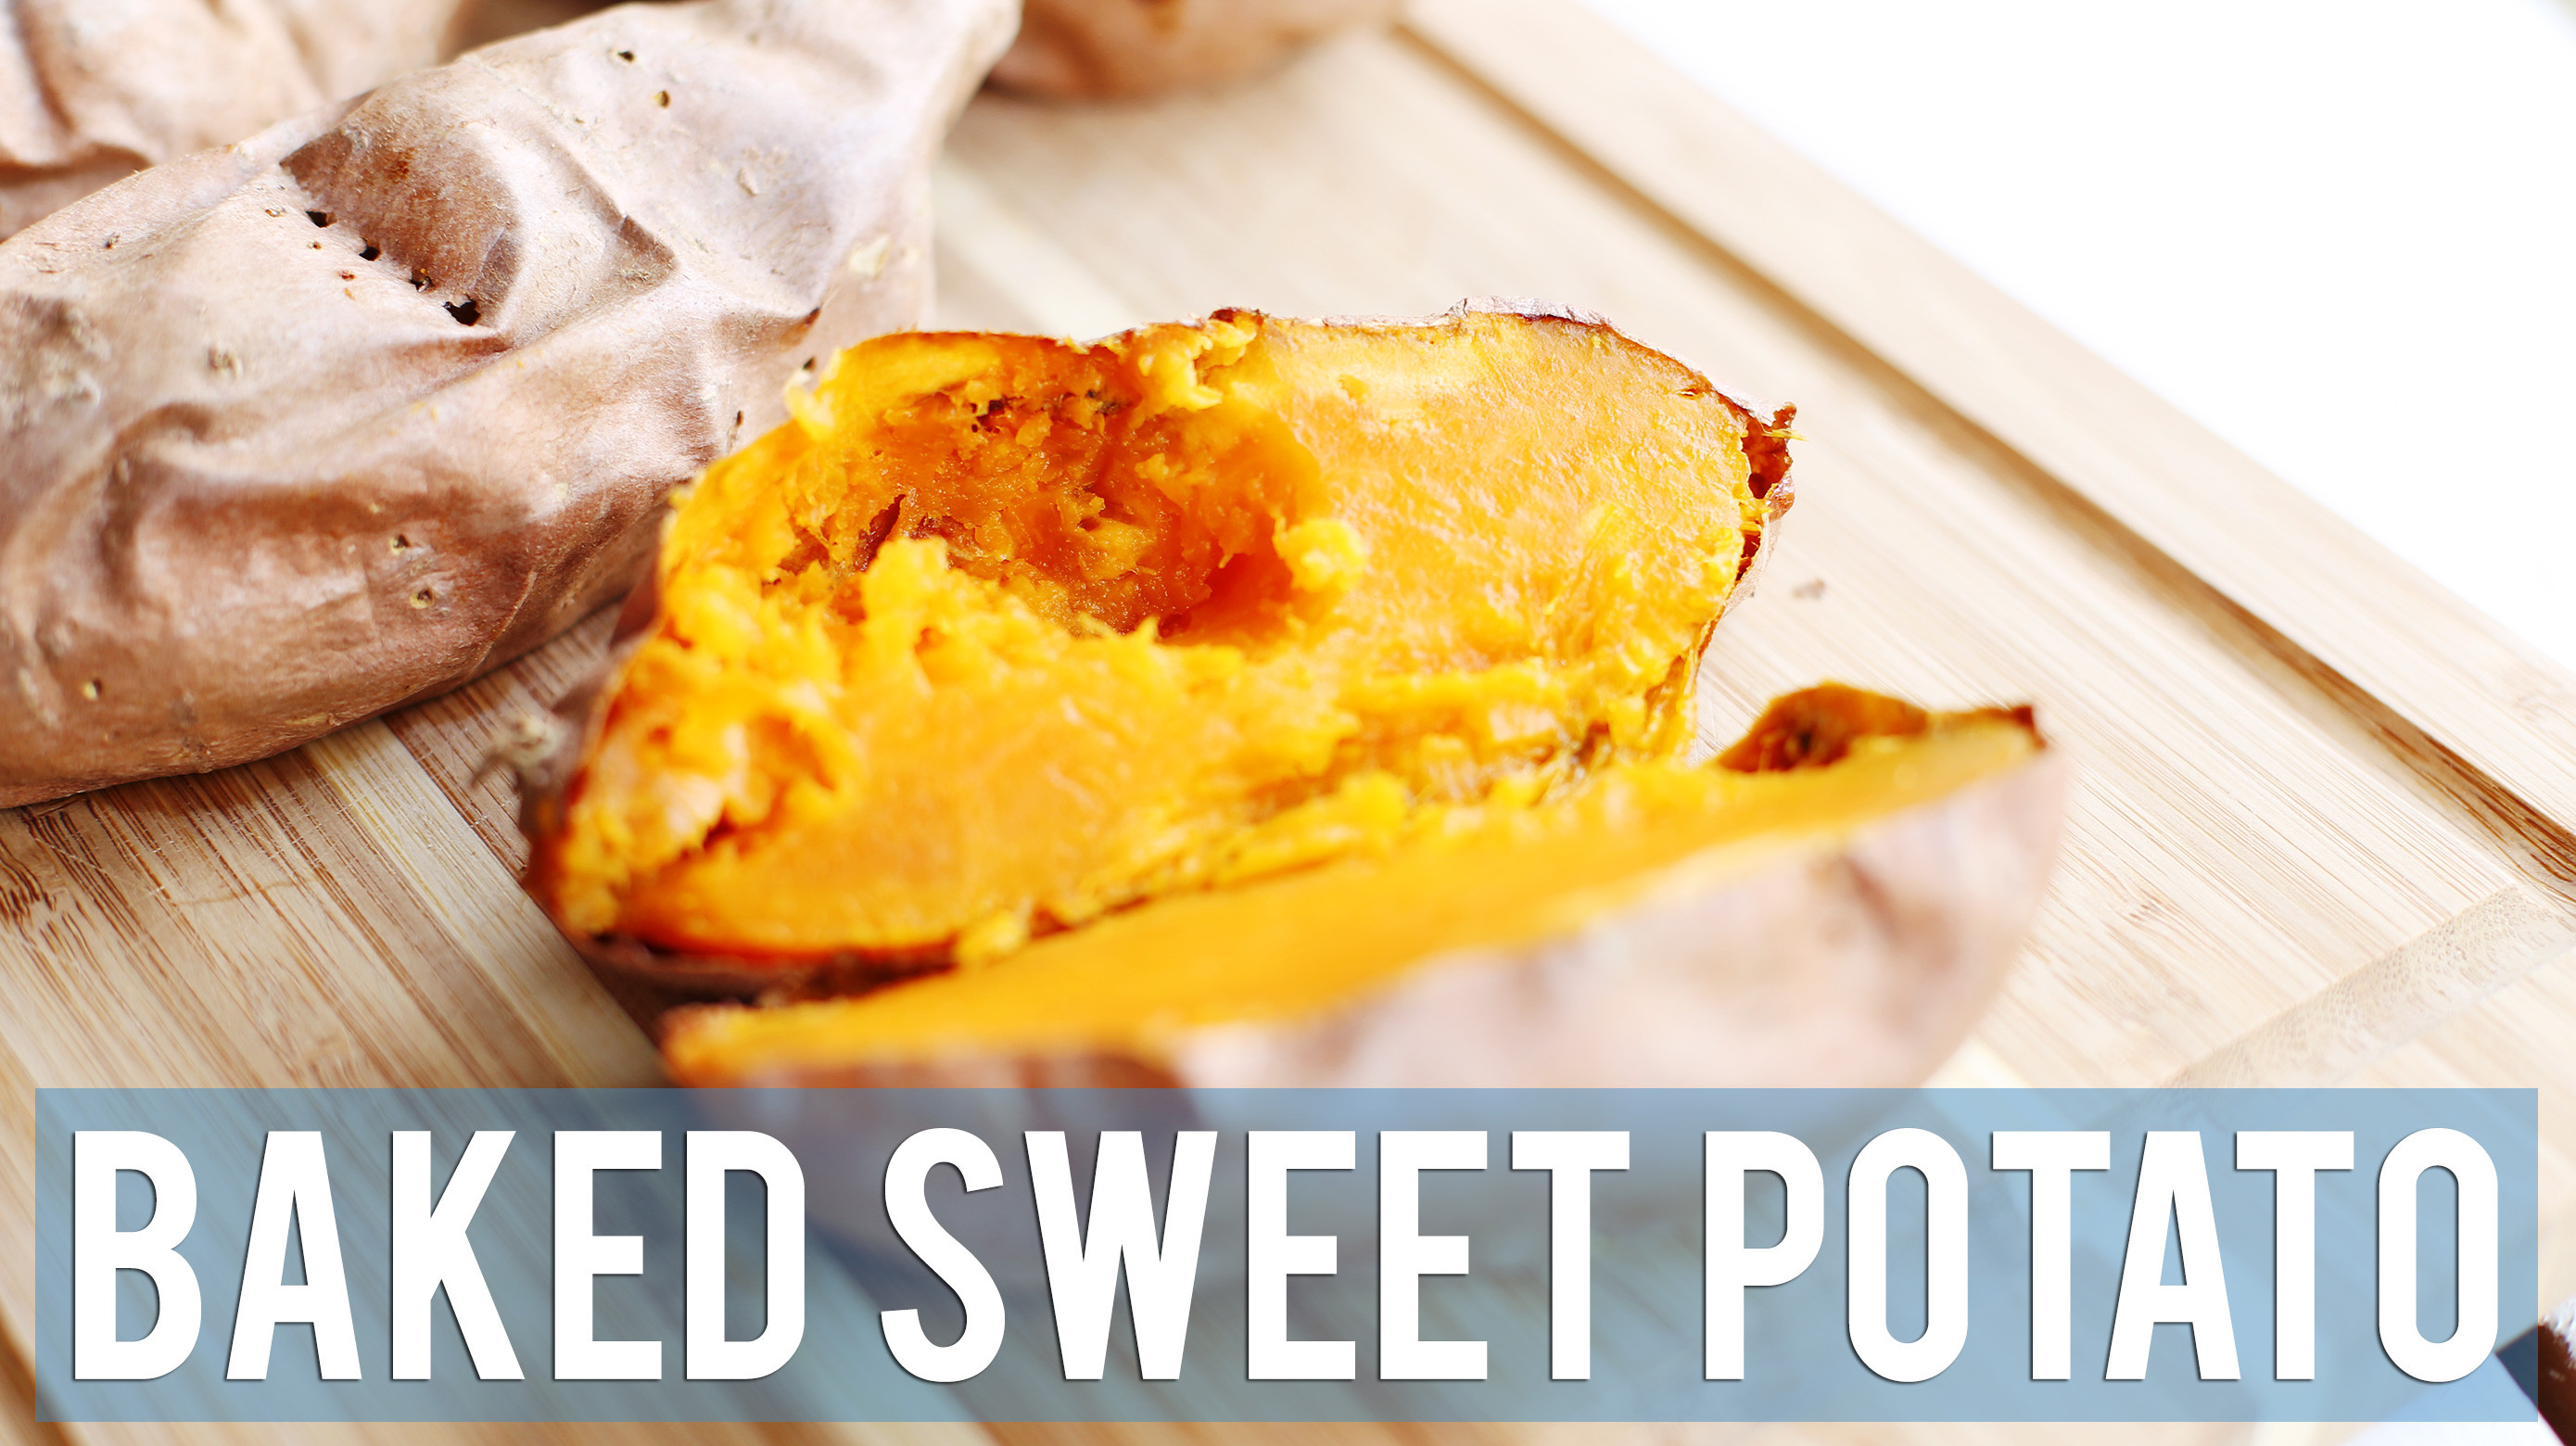 How To Cook A Sweet Potato
 How to Bake Sweet Potatoes